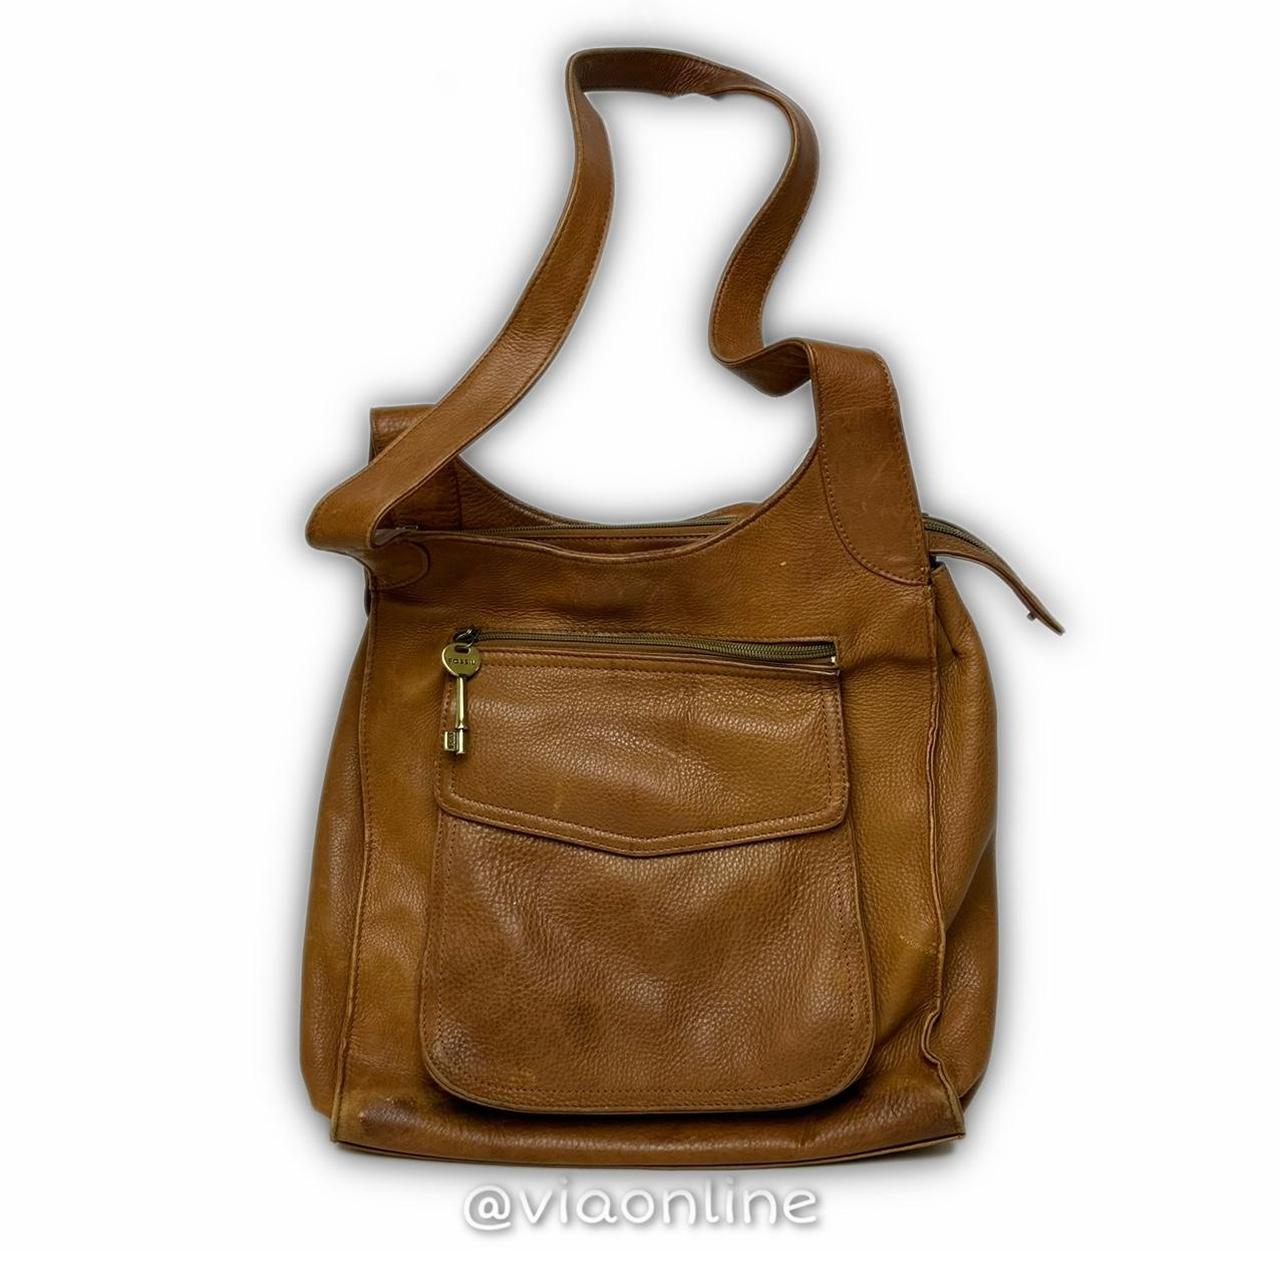 Fossil Vintage Handbags | Mercari